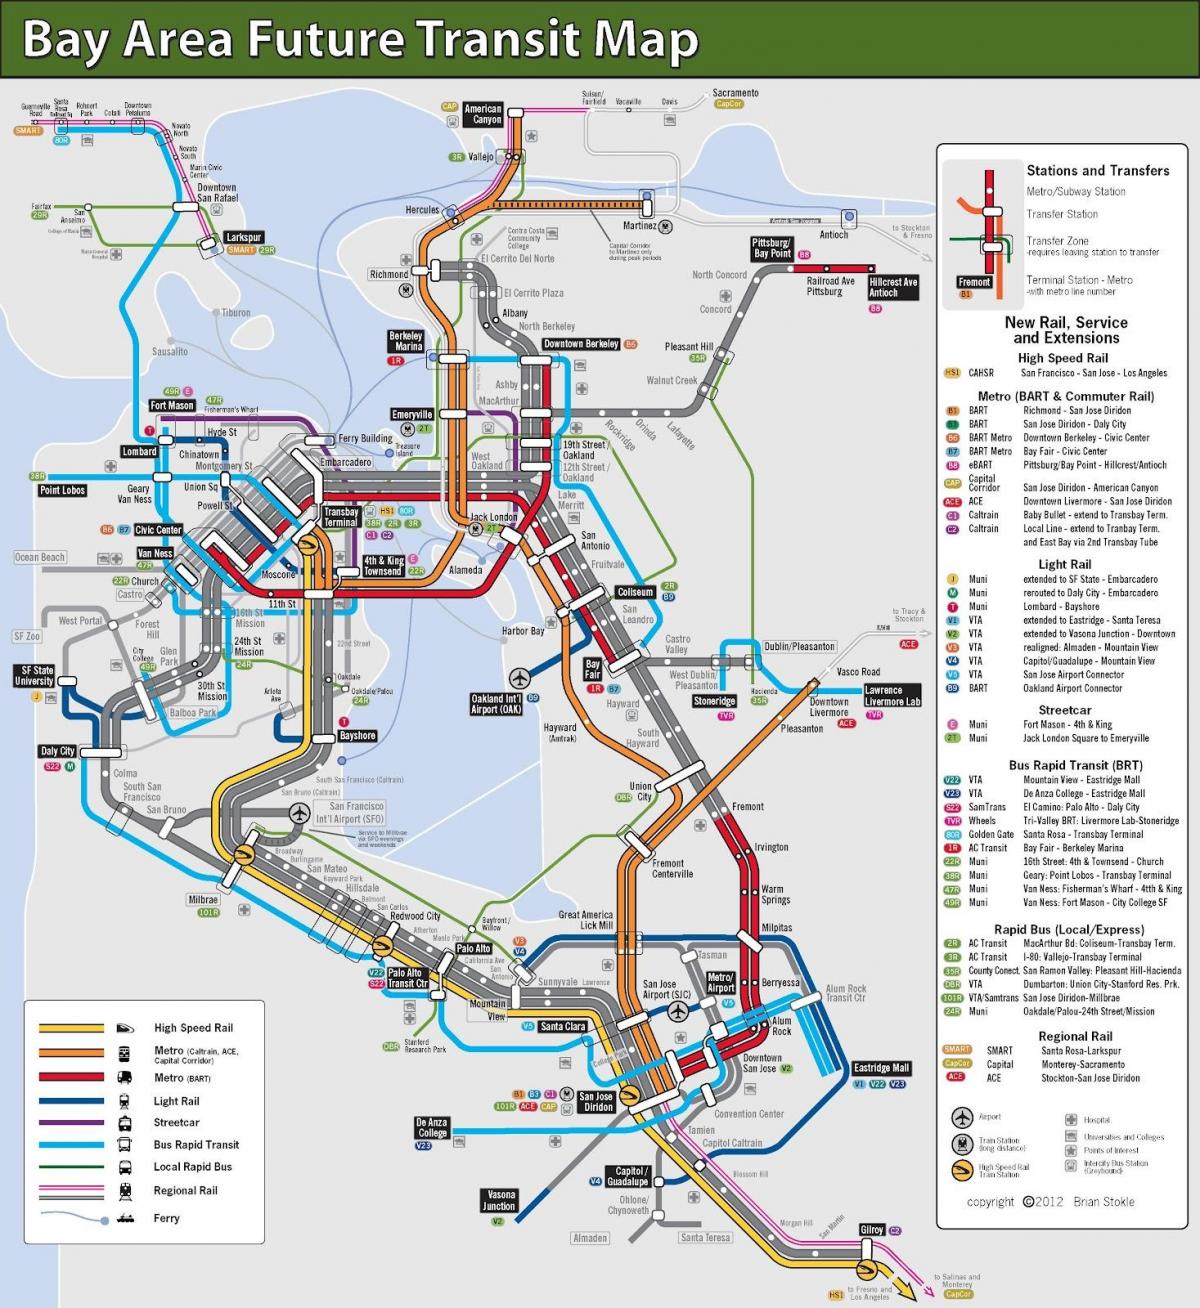 Սան-Ֆրանցիսկո քաղաքի հասարակական տրանսպորտի քարտեզ